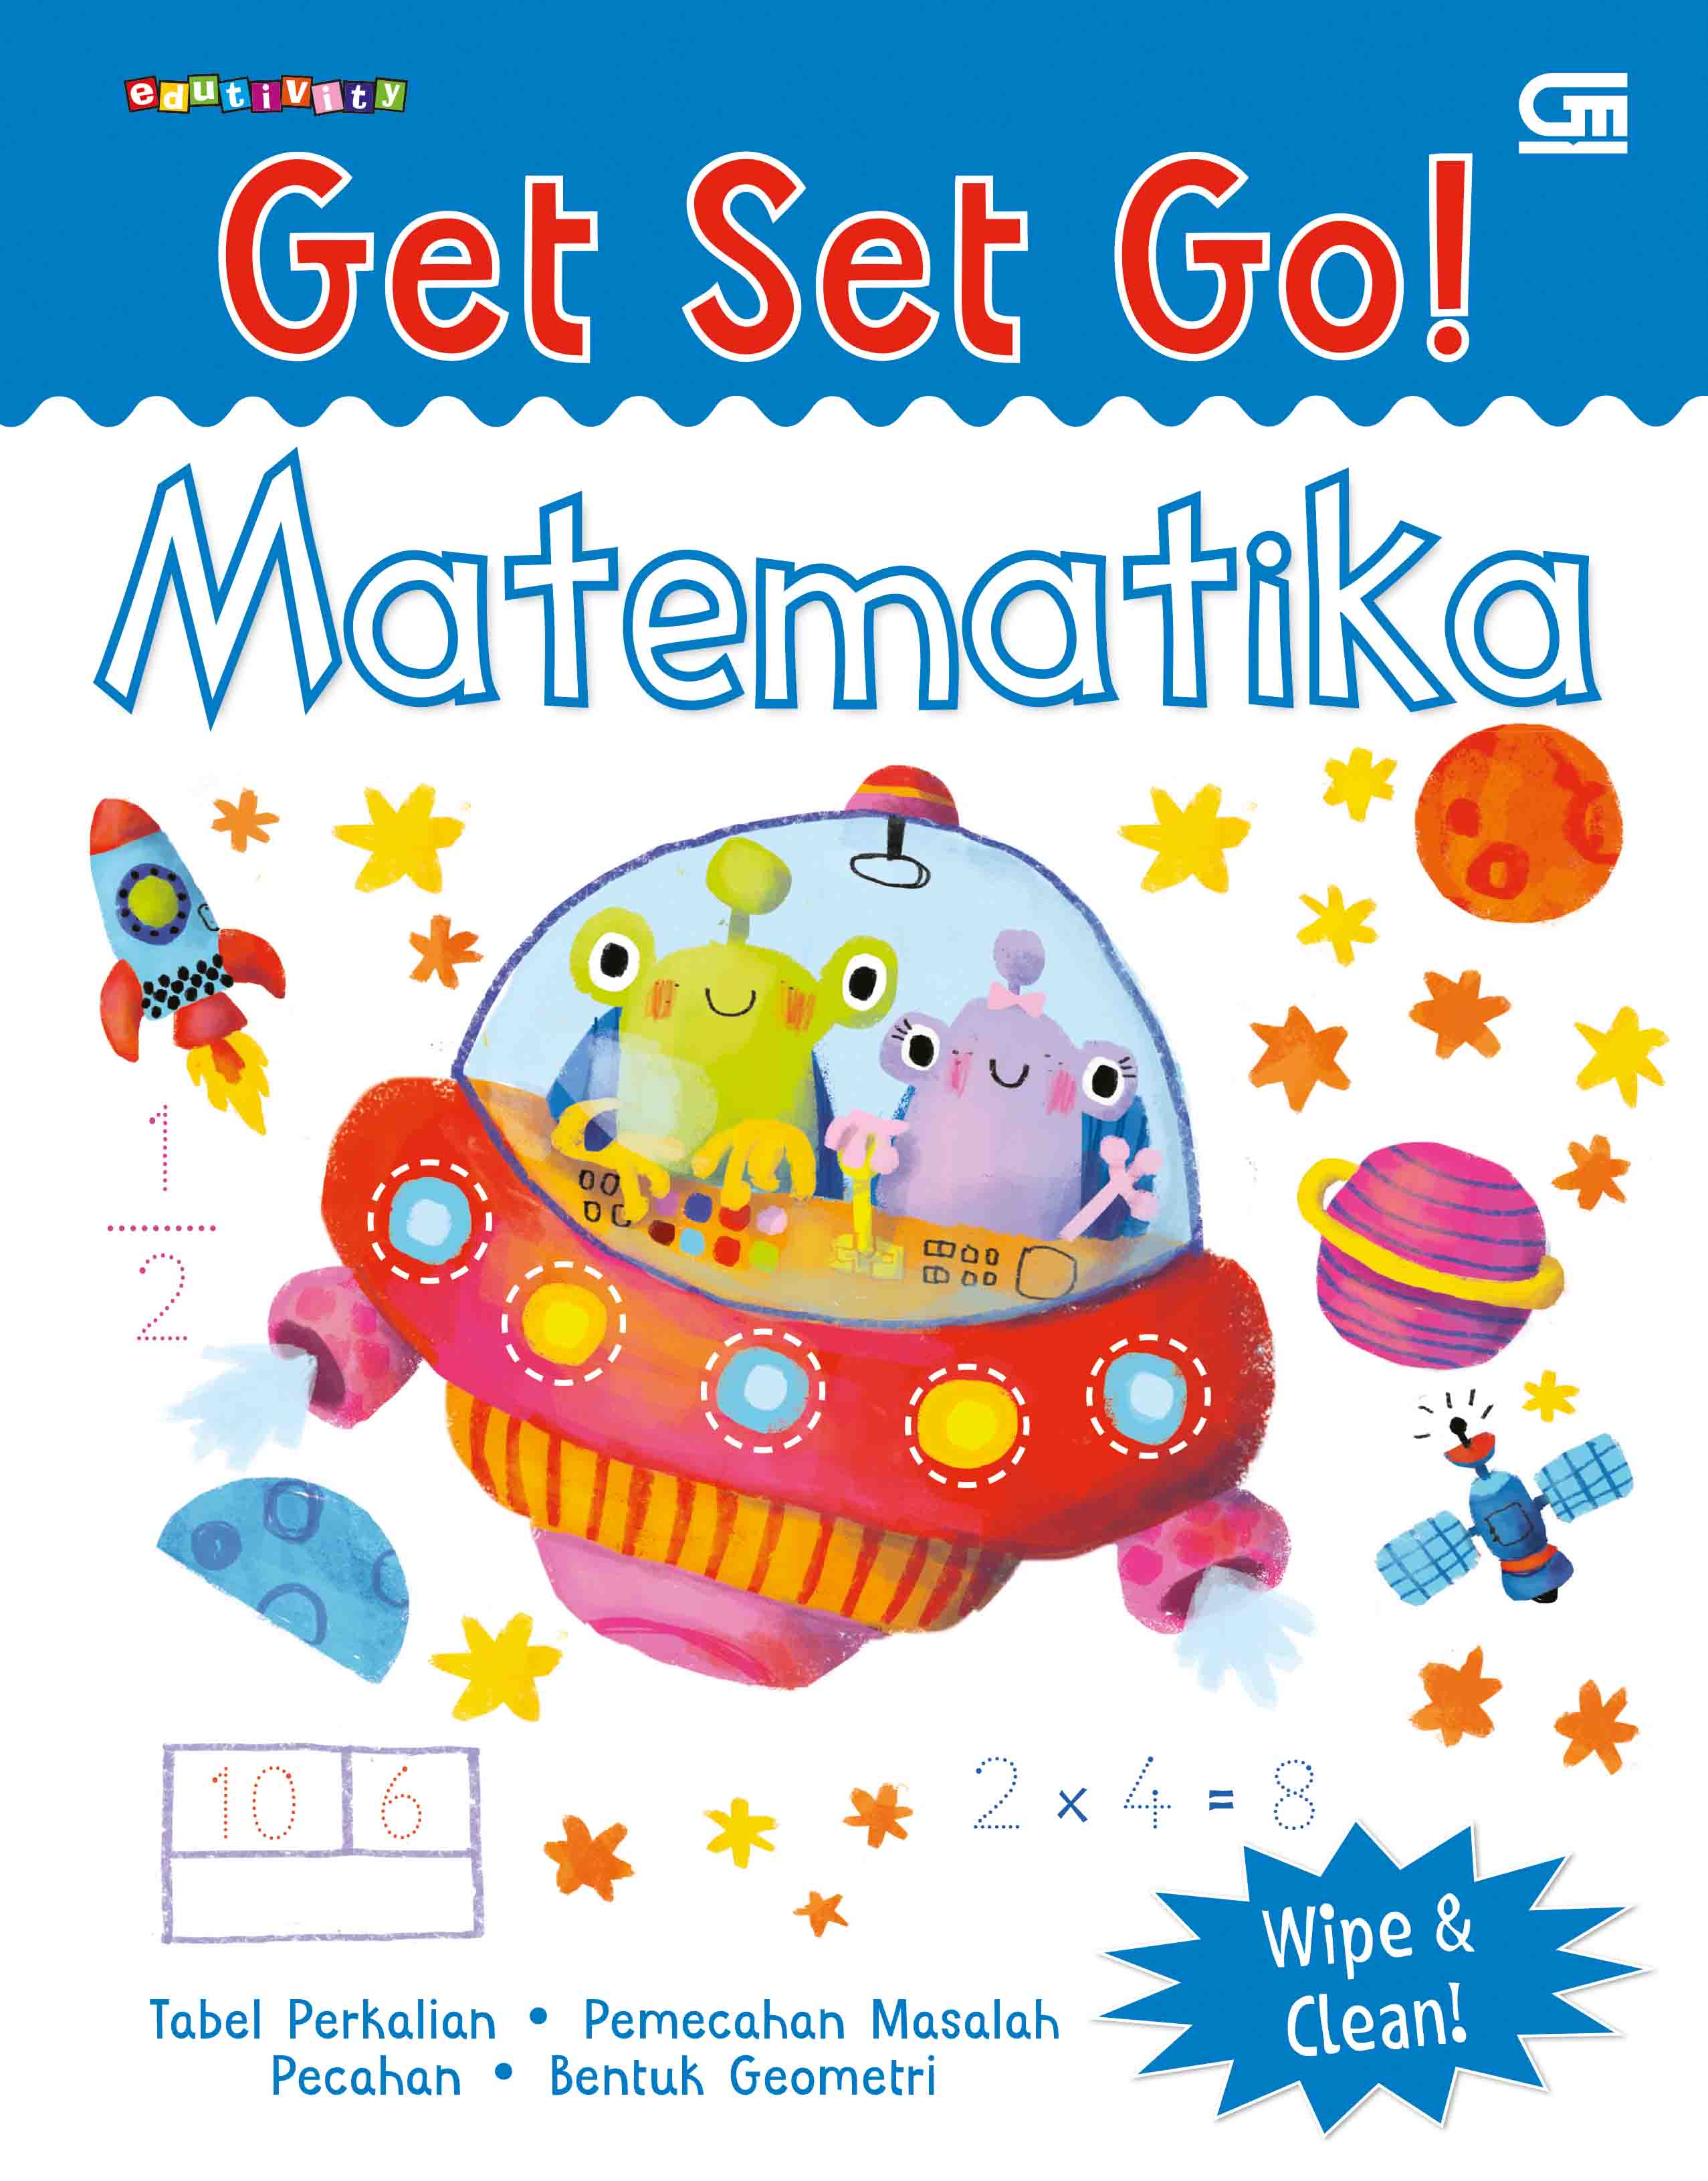 Get Set Go! Matematika (Get Set Go!: Math)